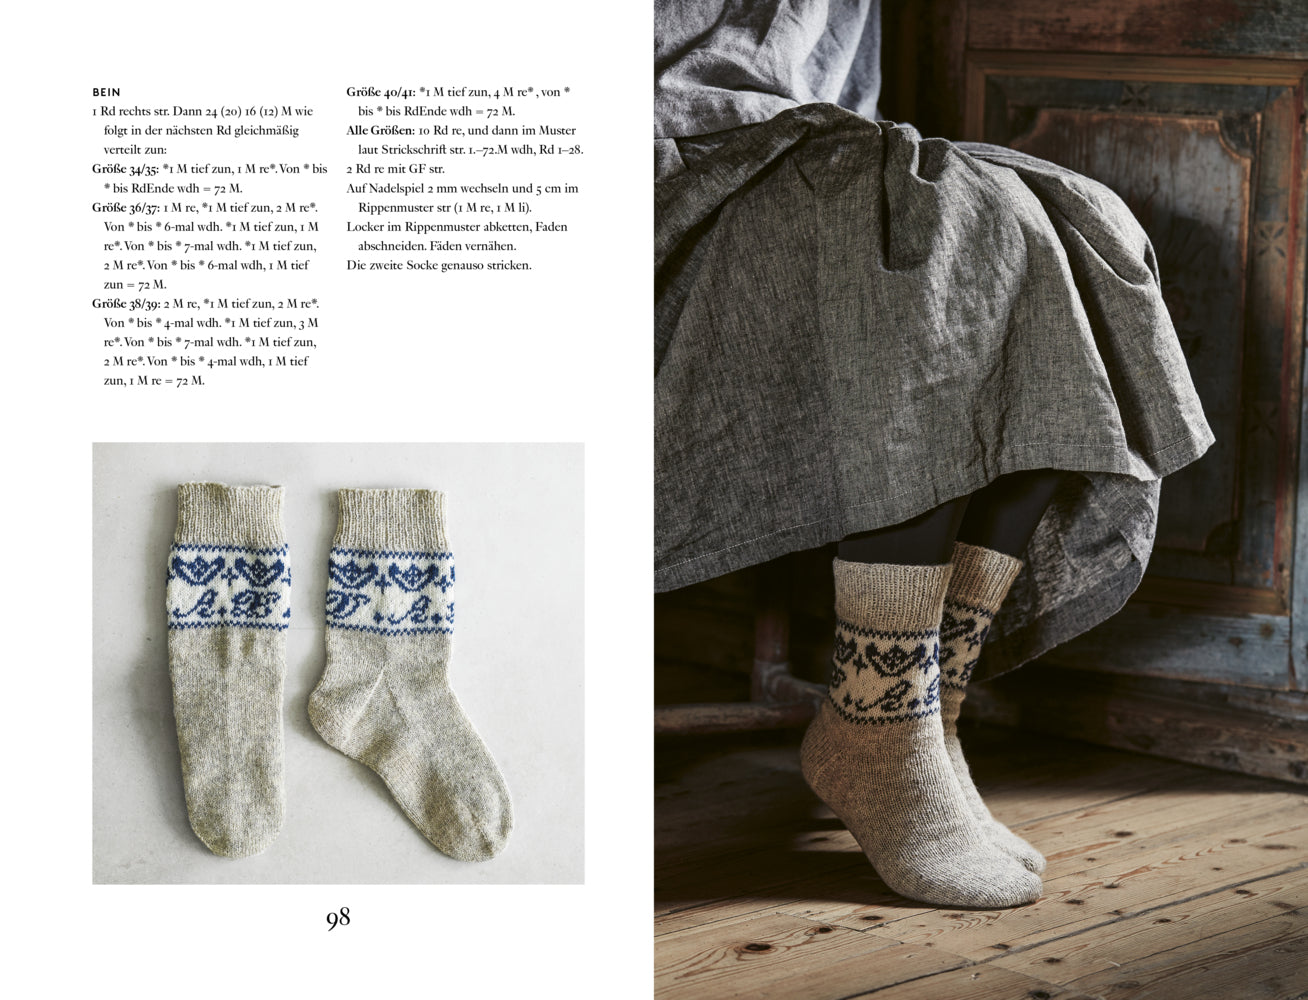 Schwedische Socken stricken - Hygge für die Füße